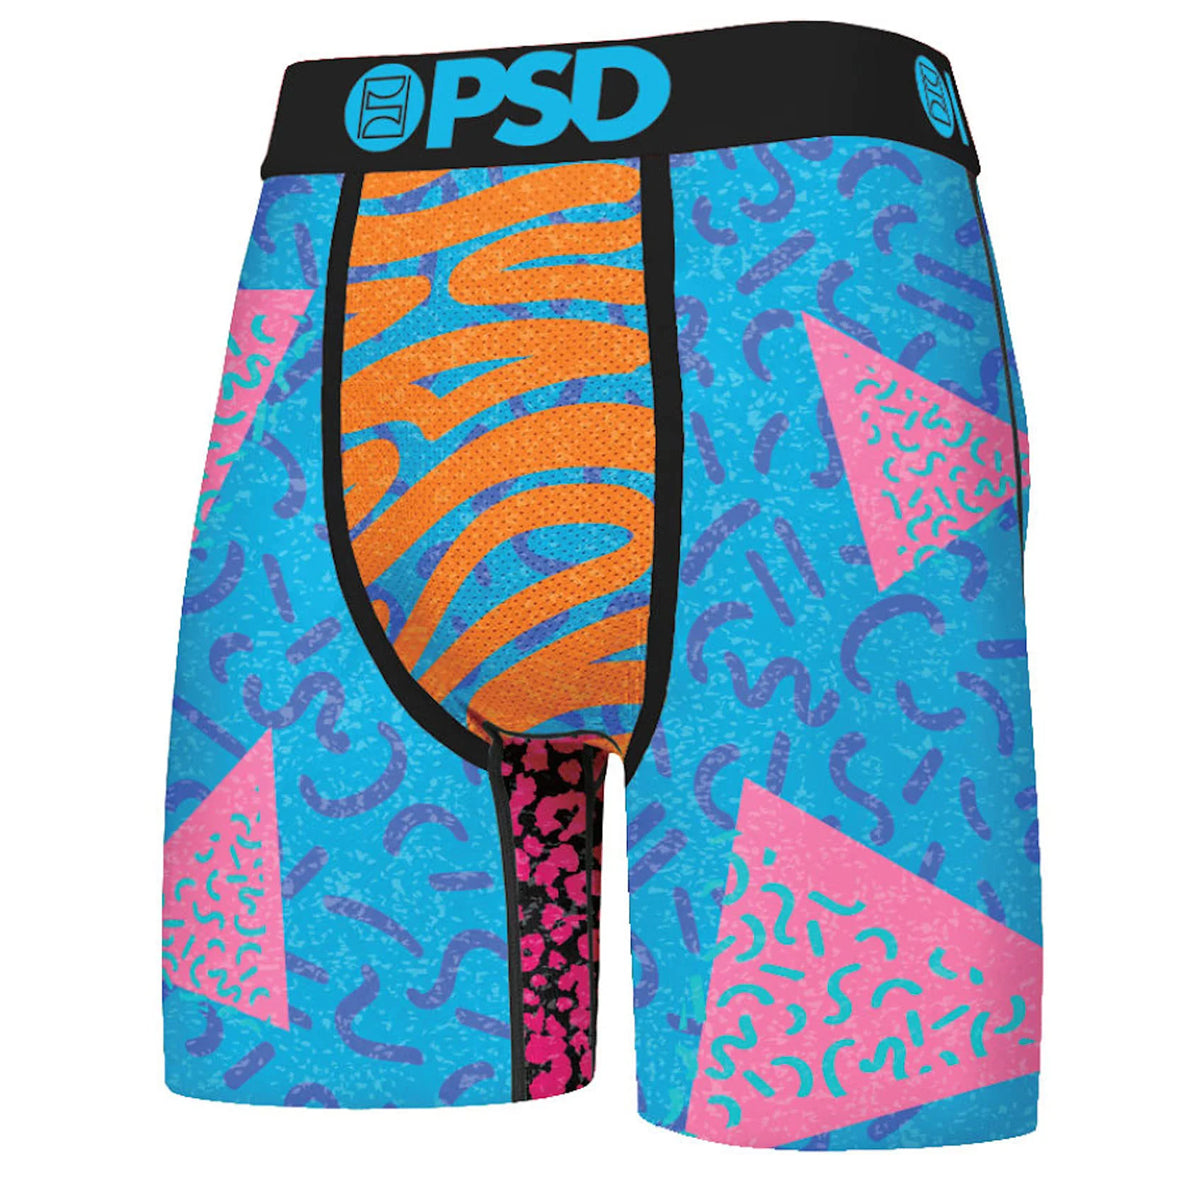 PSD SC Shredder Boxer Men's Bottom Underwear 